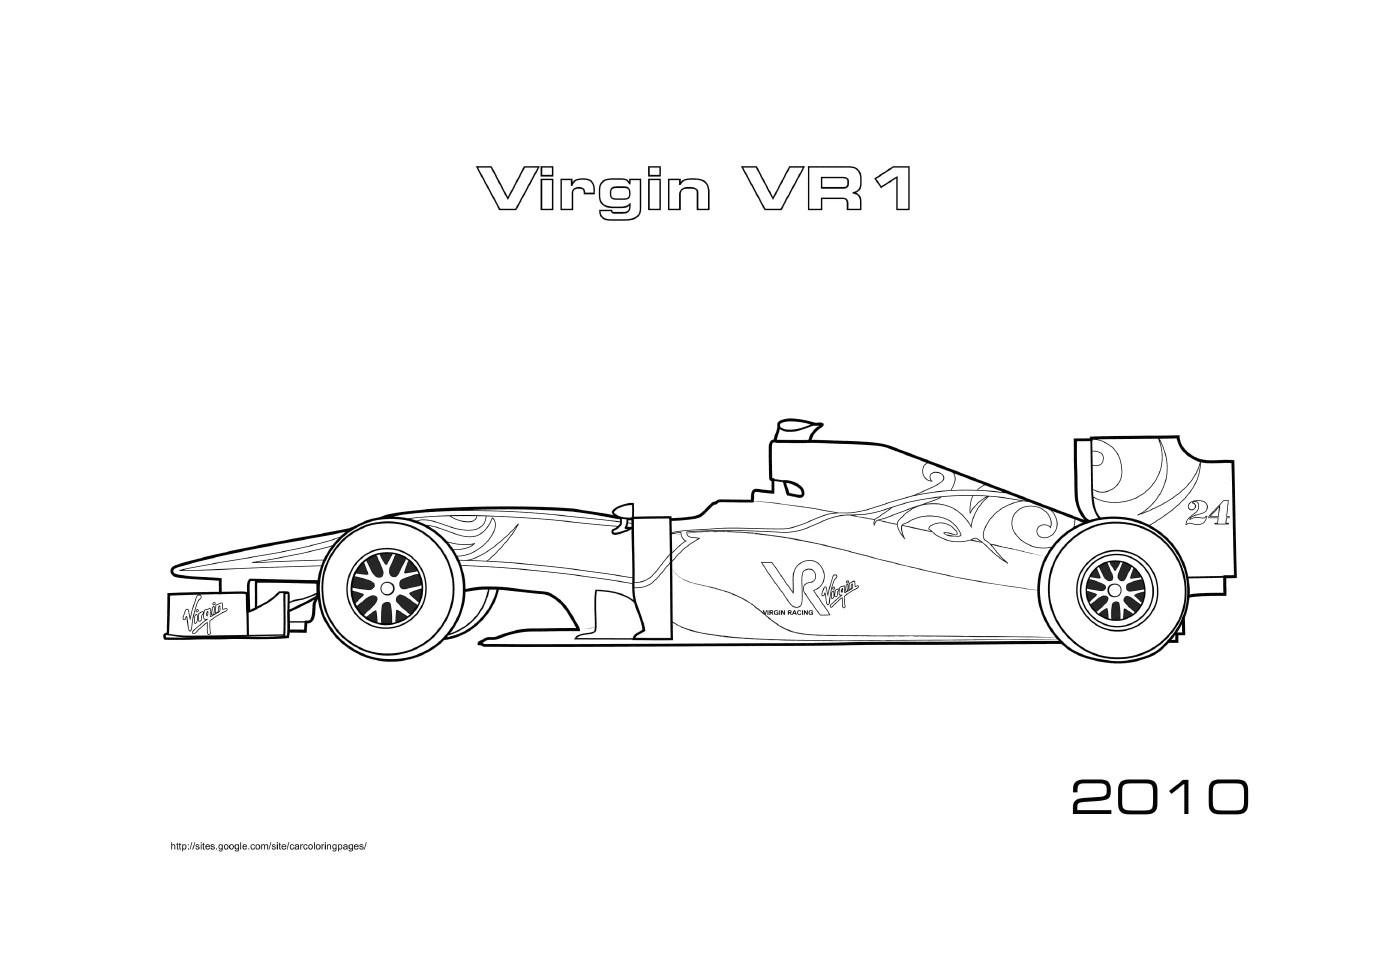  Virgin VR1 2010 race car 